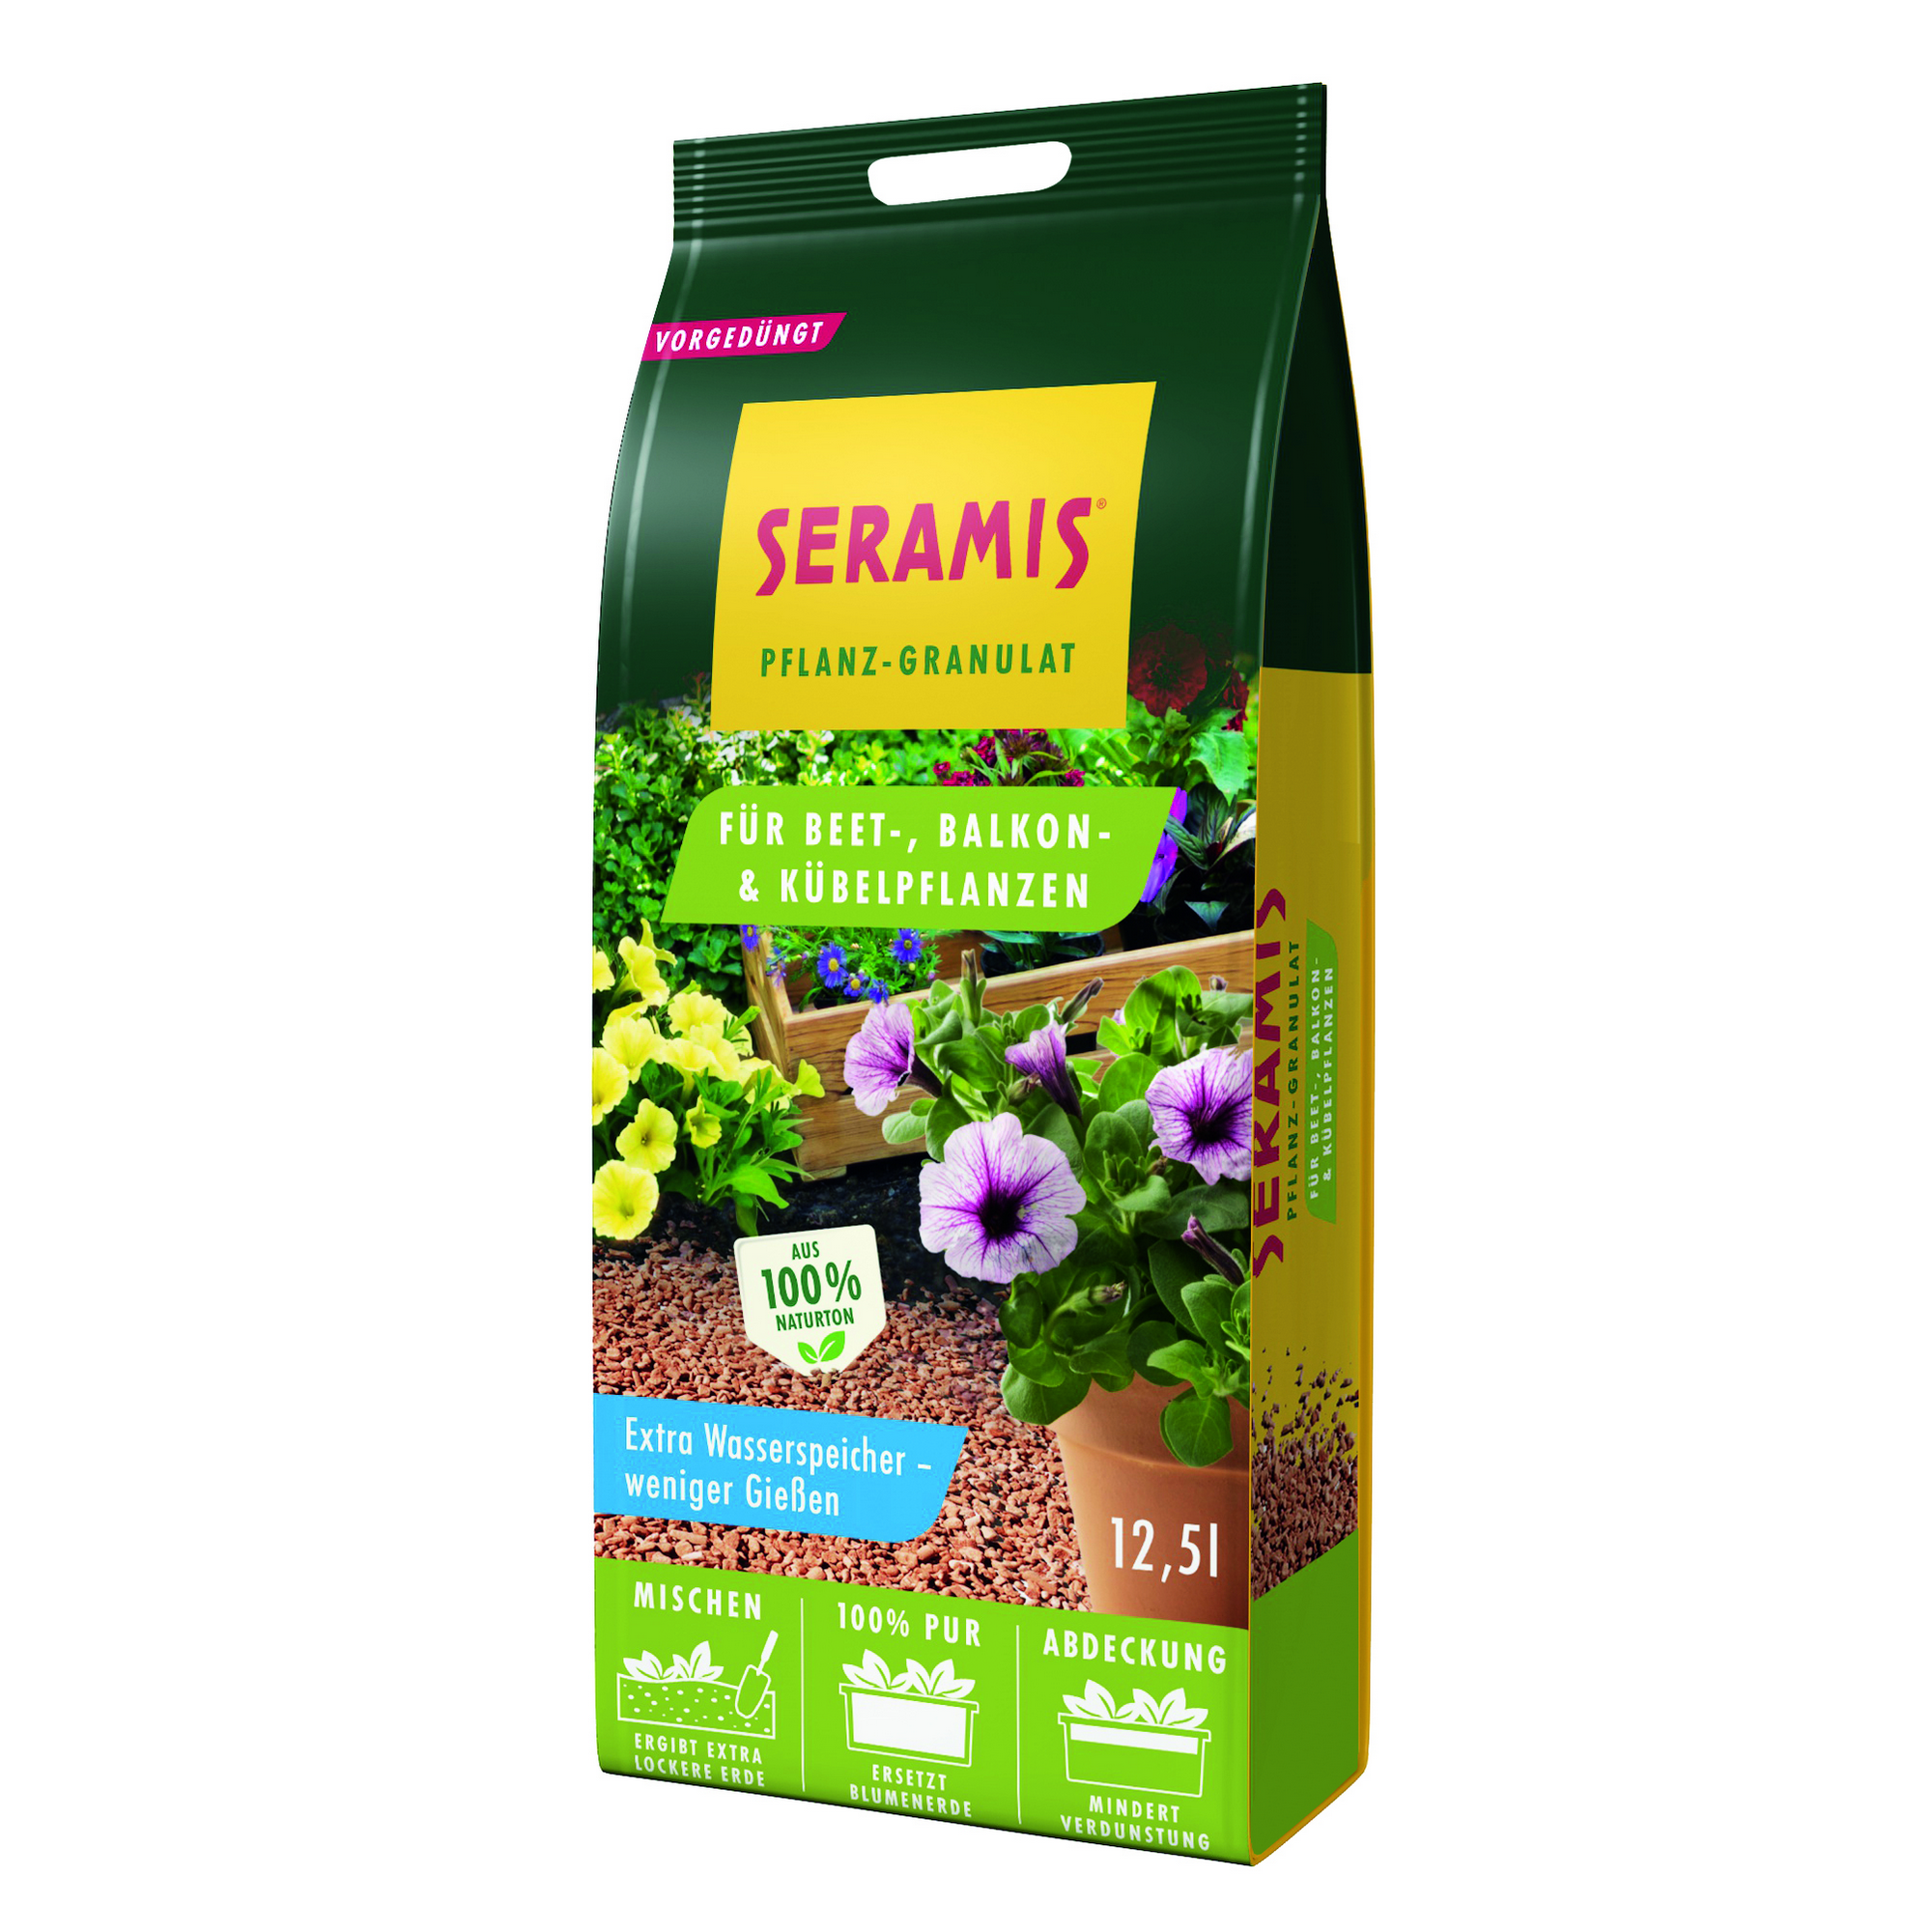 Pflanz-Granulat für Beet,- Balkon- und Kübelpflanzen 12,5 Liter + product picture